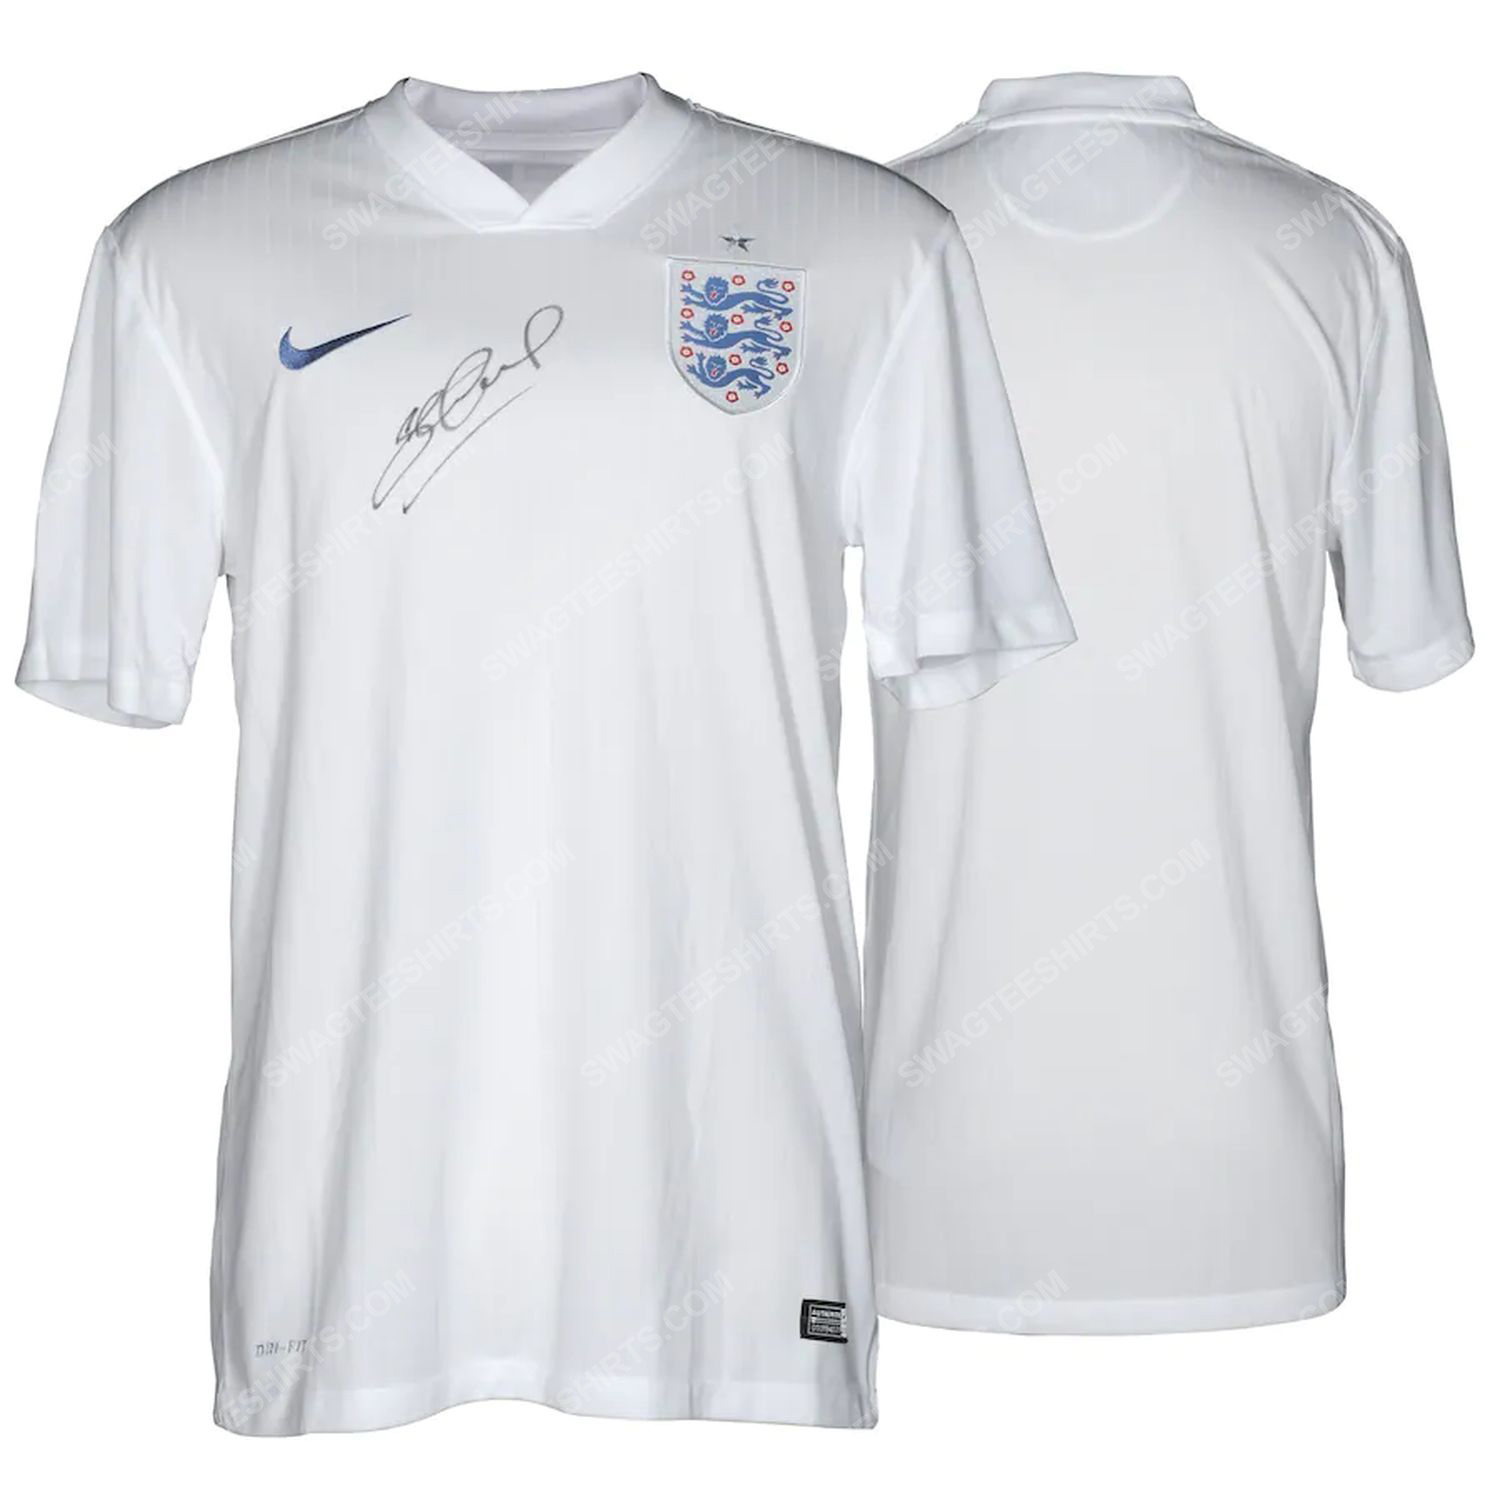 Steven gerrard england national team football jersey 2 - Copy